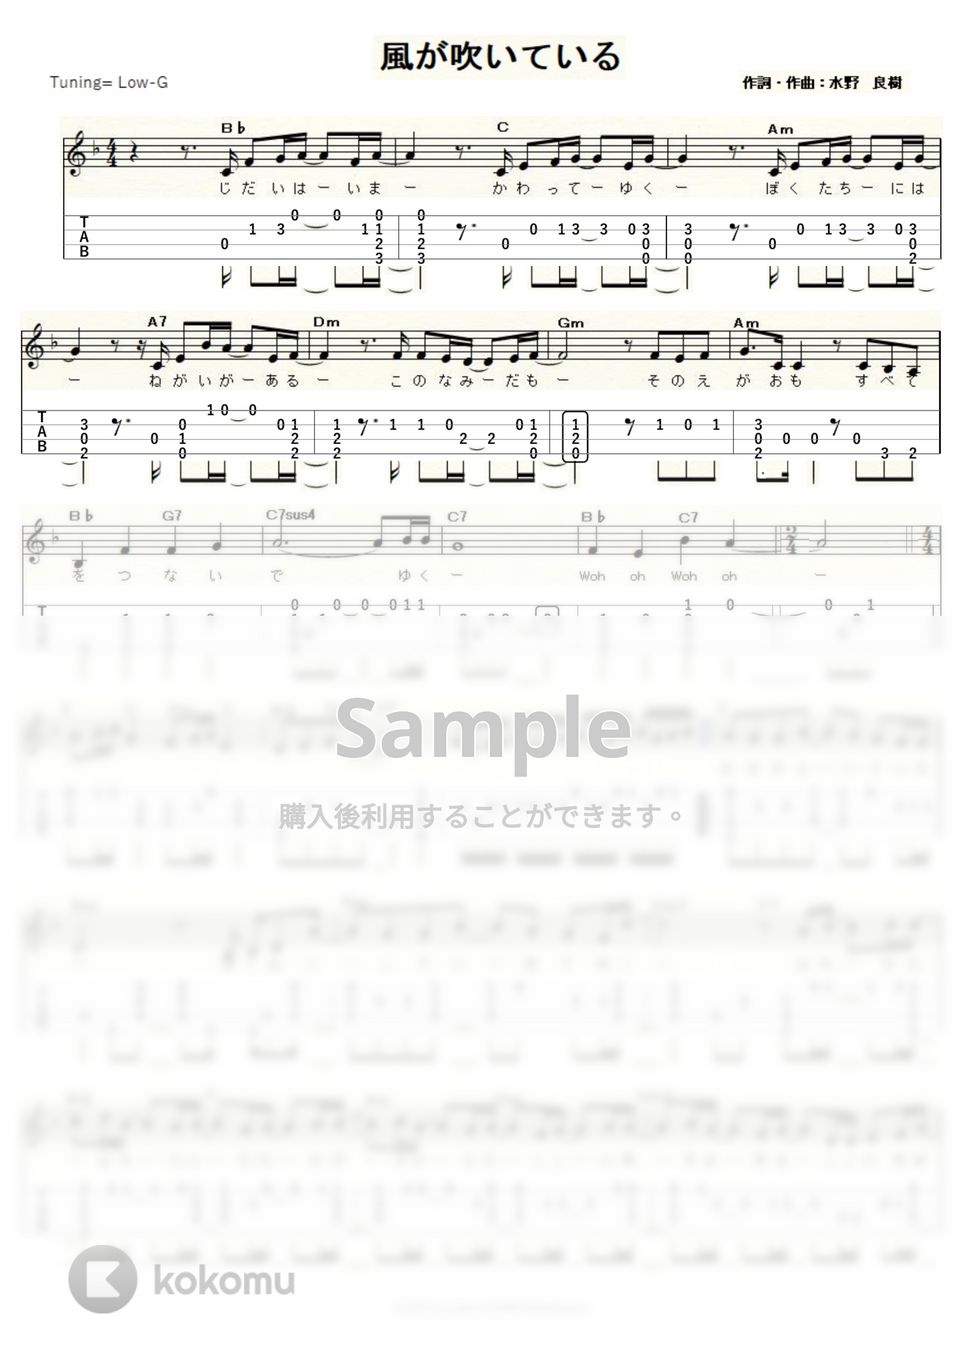 いきものがかり - 風が吹いている (ｳｸﾚﾚｿﾛ / Low-G / 中～上級) by ukulelepapa